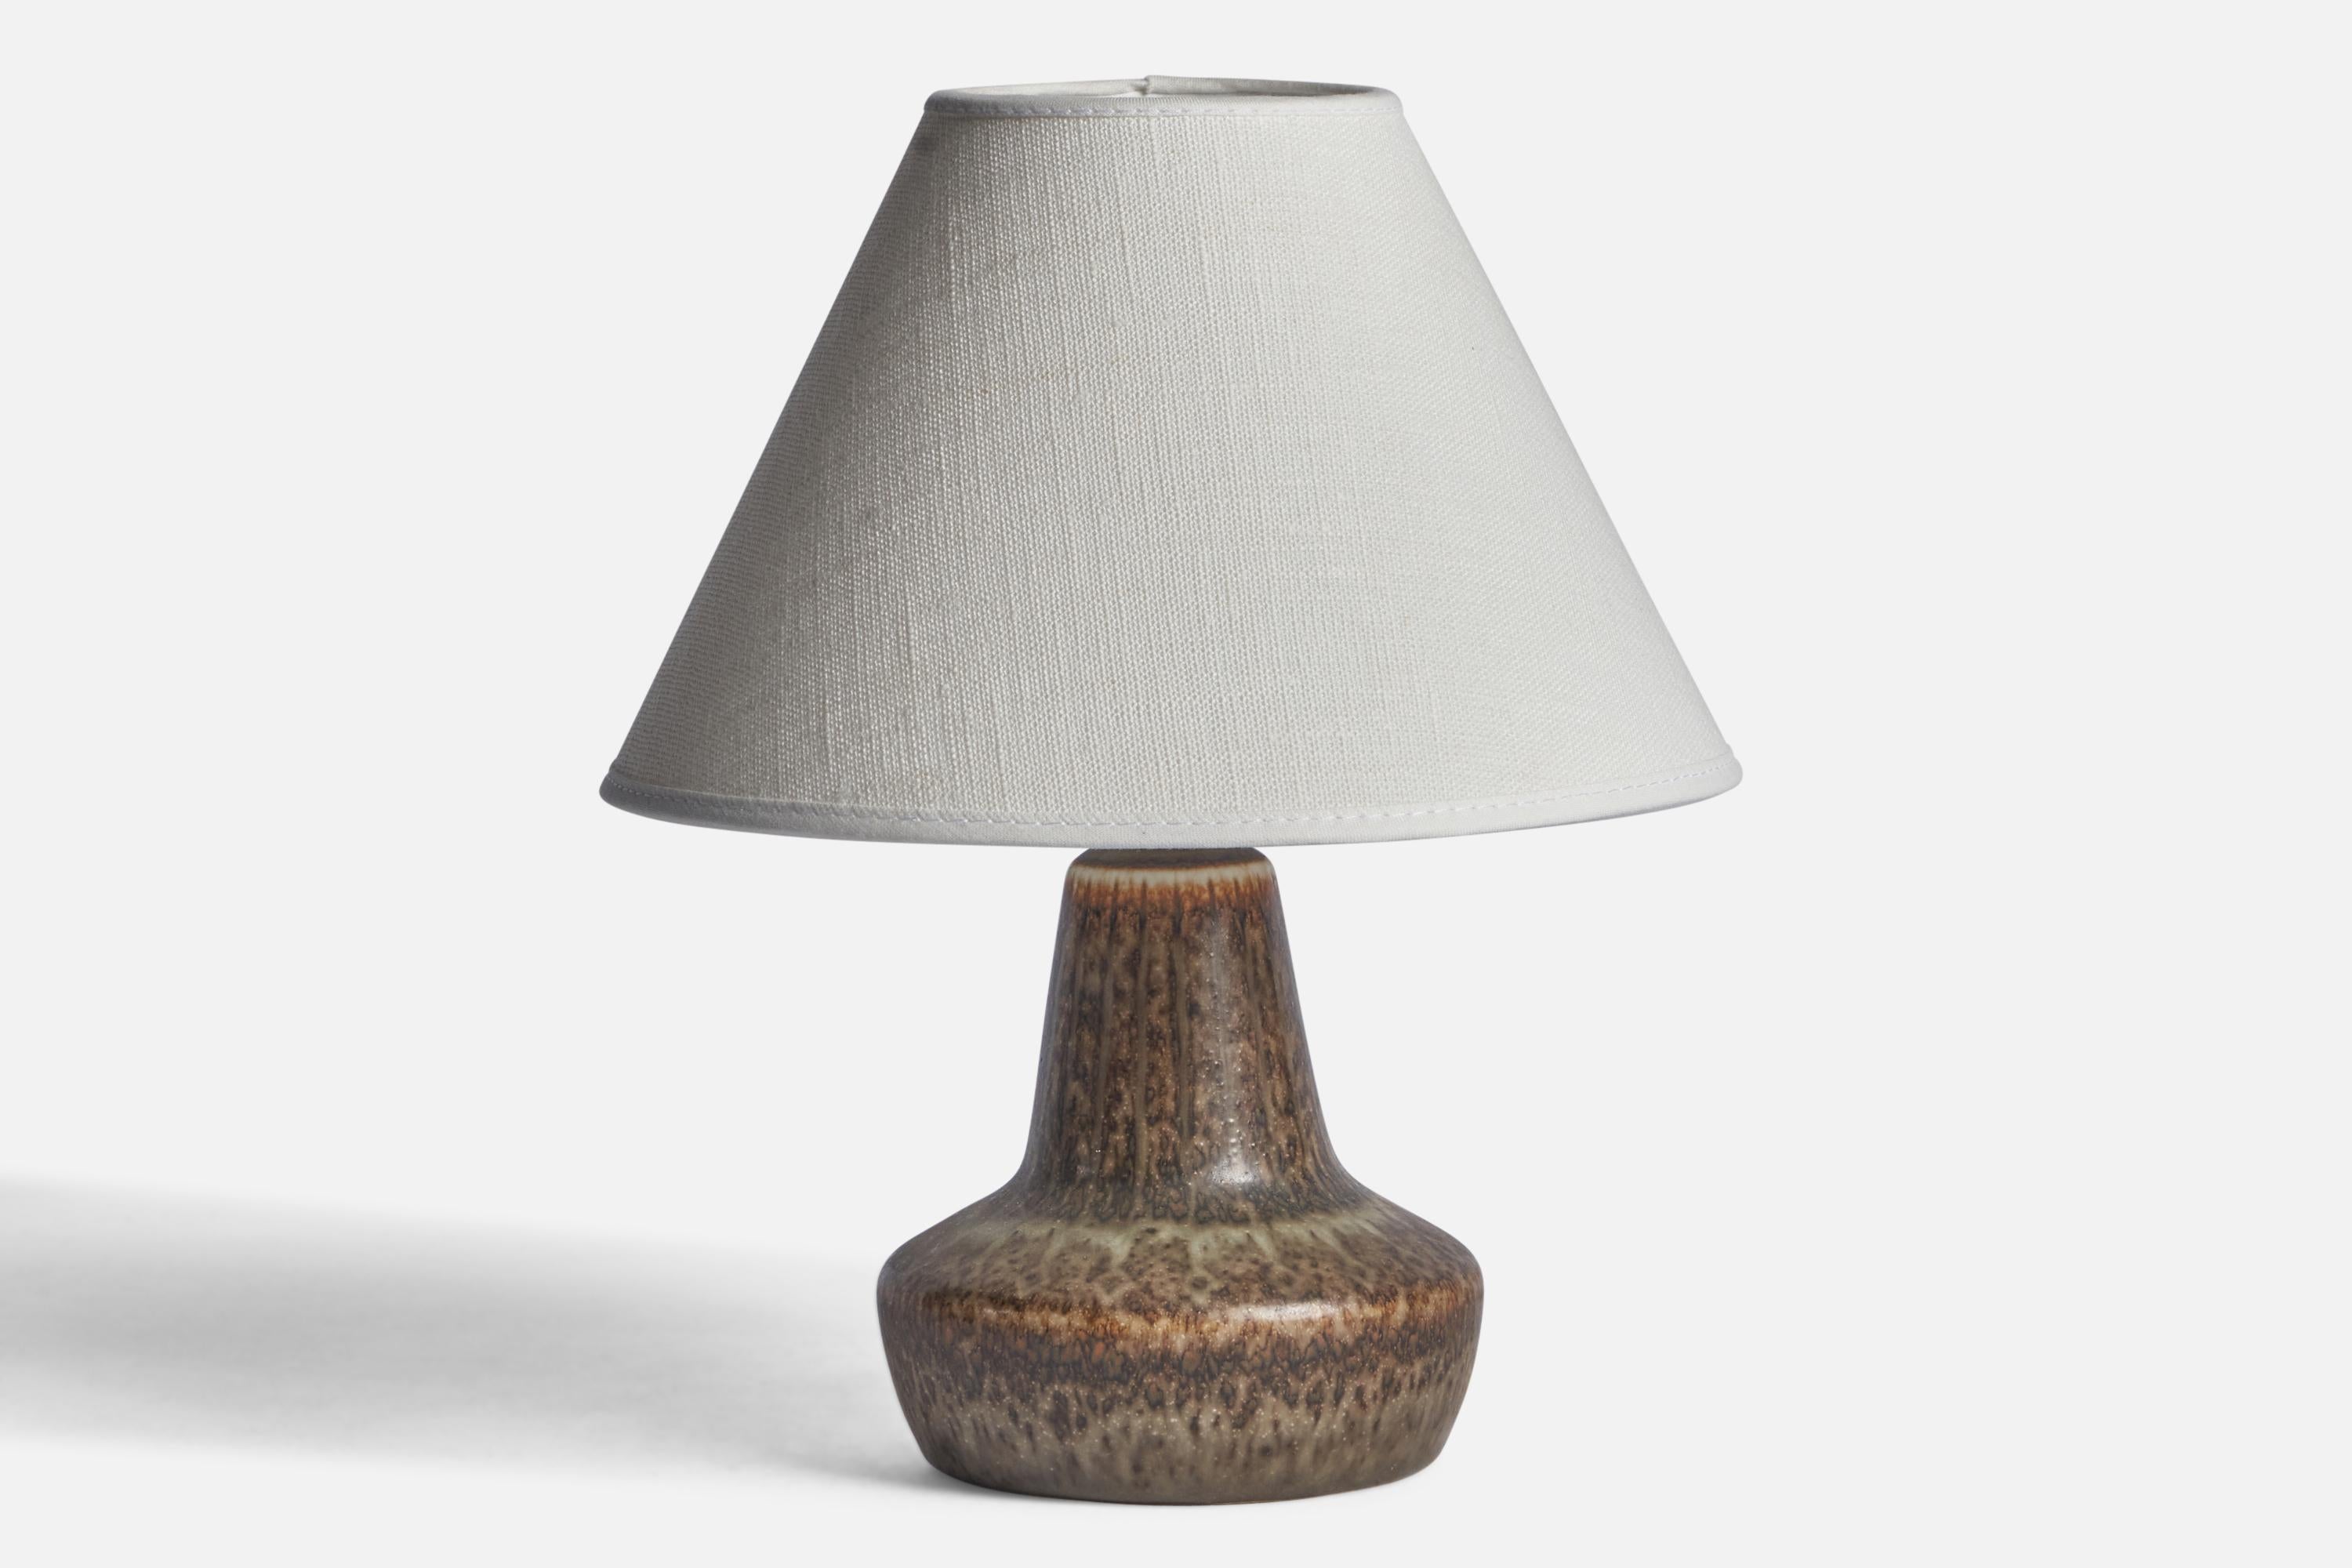 Lampe de table en grès émaillé brun, conçue par Gunnar Nylund et produite par Rörstrand, Suède, années 1940.

Dimensions de la lampe (pouces) : 7